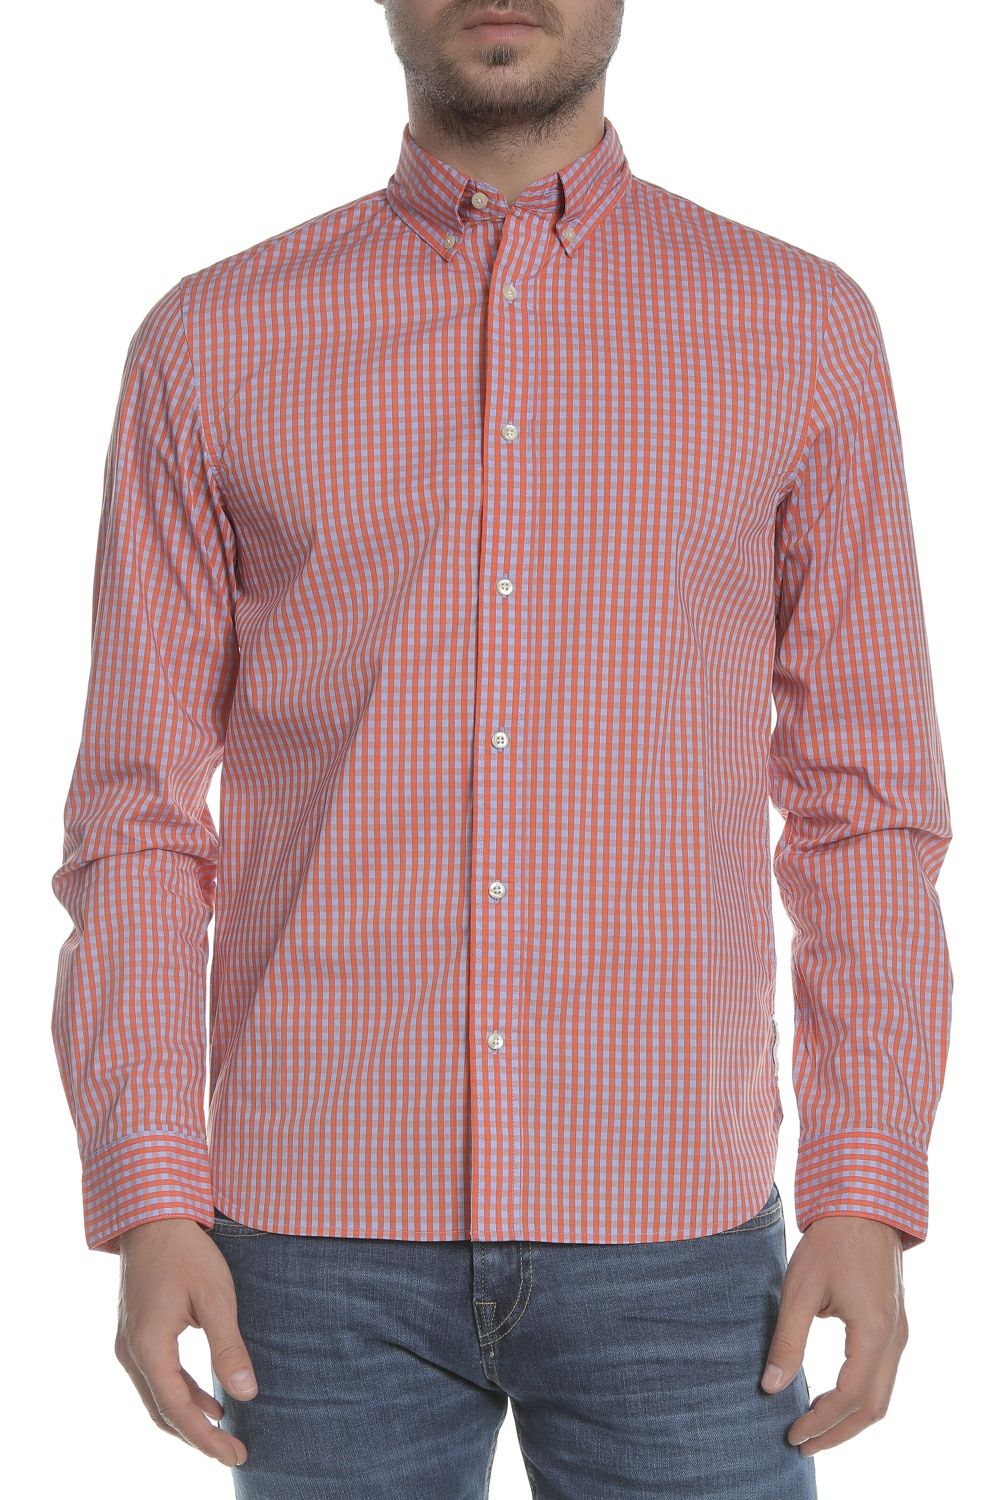 SCOTCH & SODA SCOTCH & SODA - Ανδρικό πουκάμισο REGULAR FIT - Classic BB-check κόκκινο